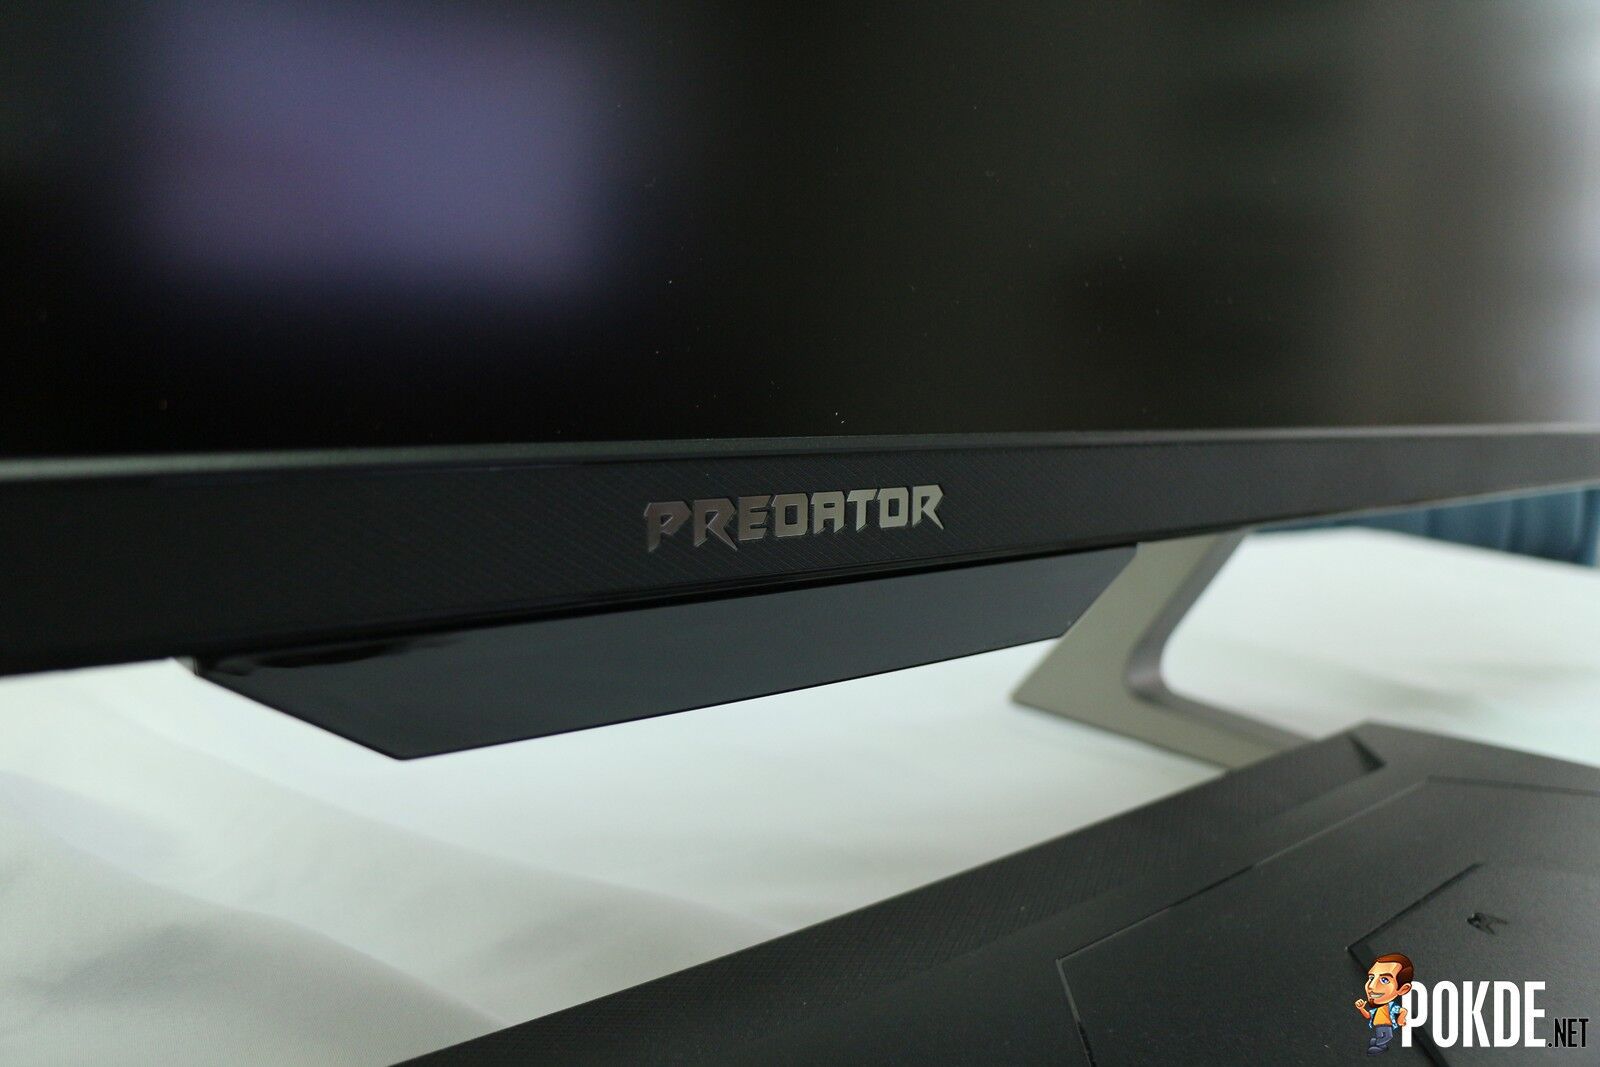 Acer Predator CG437K P Review